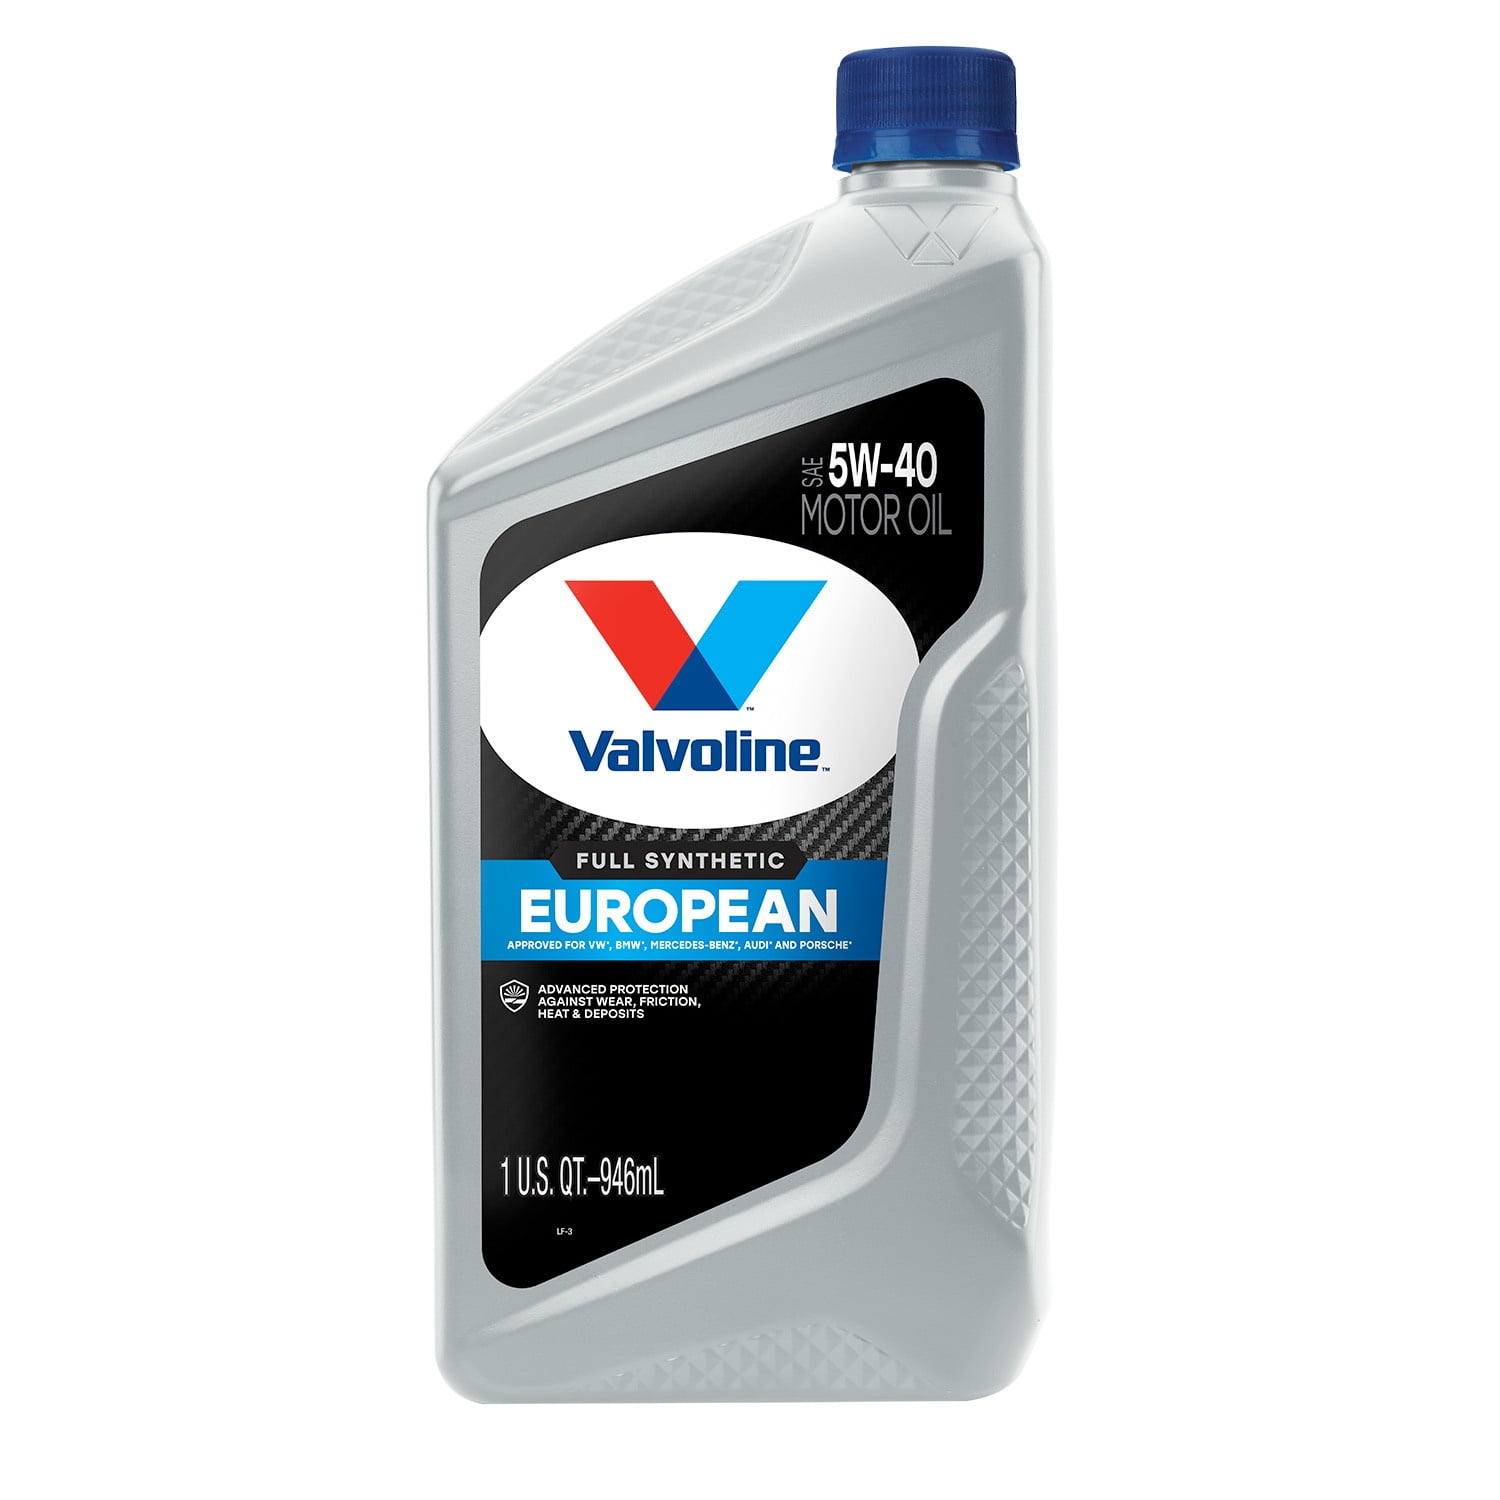 Valvoline European Vehicle Full Synthetic 5W-40 Motor Oil 1 QT